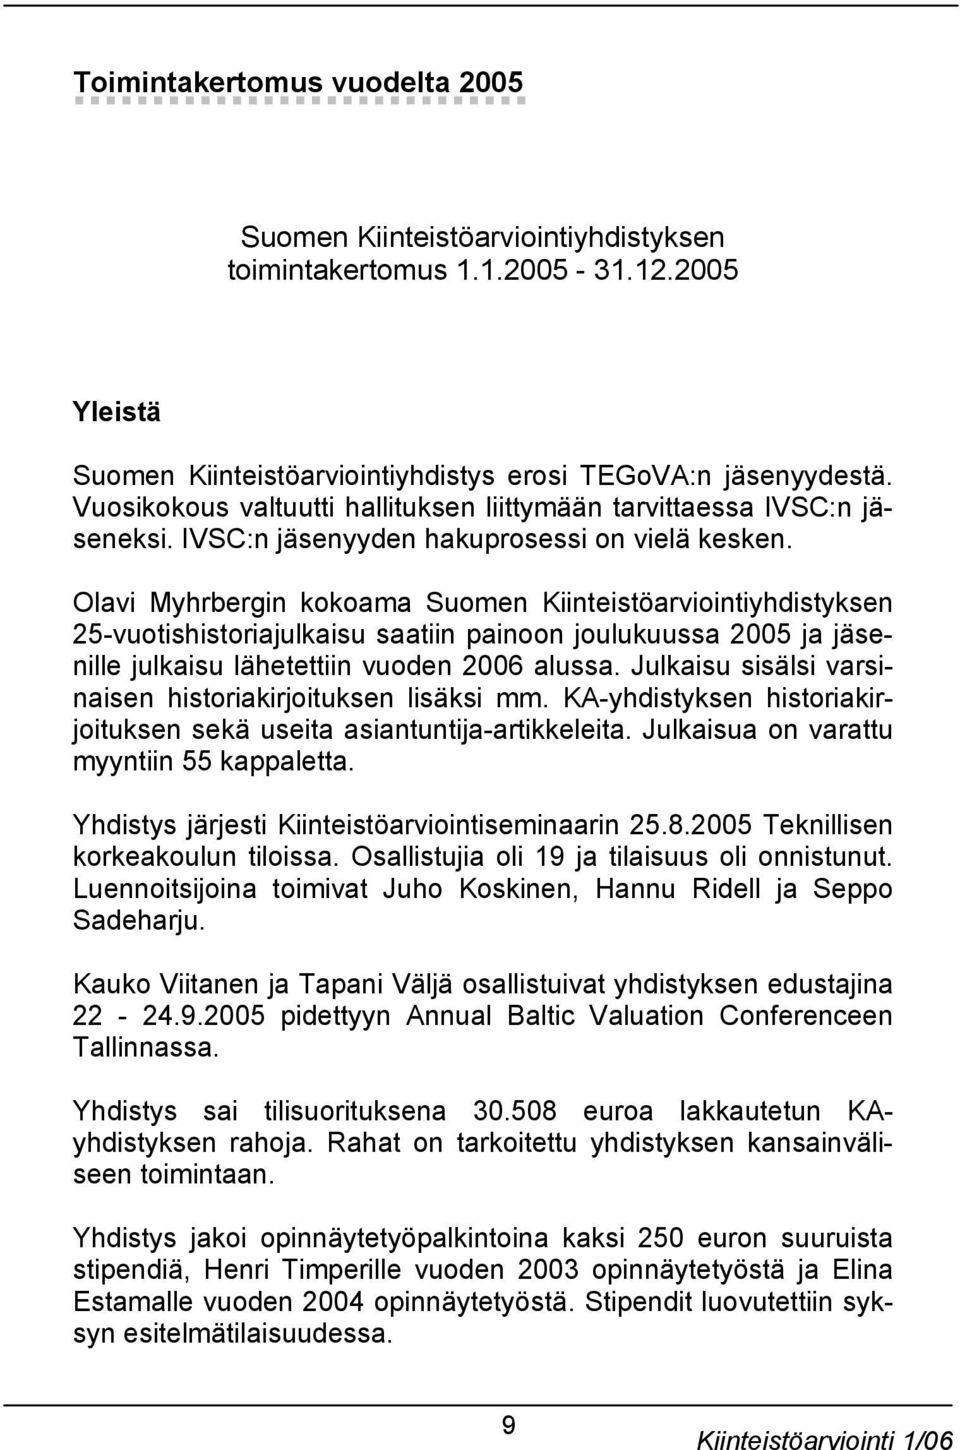 Olavi Myhrbergin kokoama Suomen Kiinteistöarviointiyhdistyksen 25-vuotishistoriajulkaisu saatiin painoon joulukuussa 2005 ja jäsenille julkaisu lähetettiin vuoden 2006 alussa.